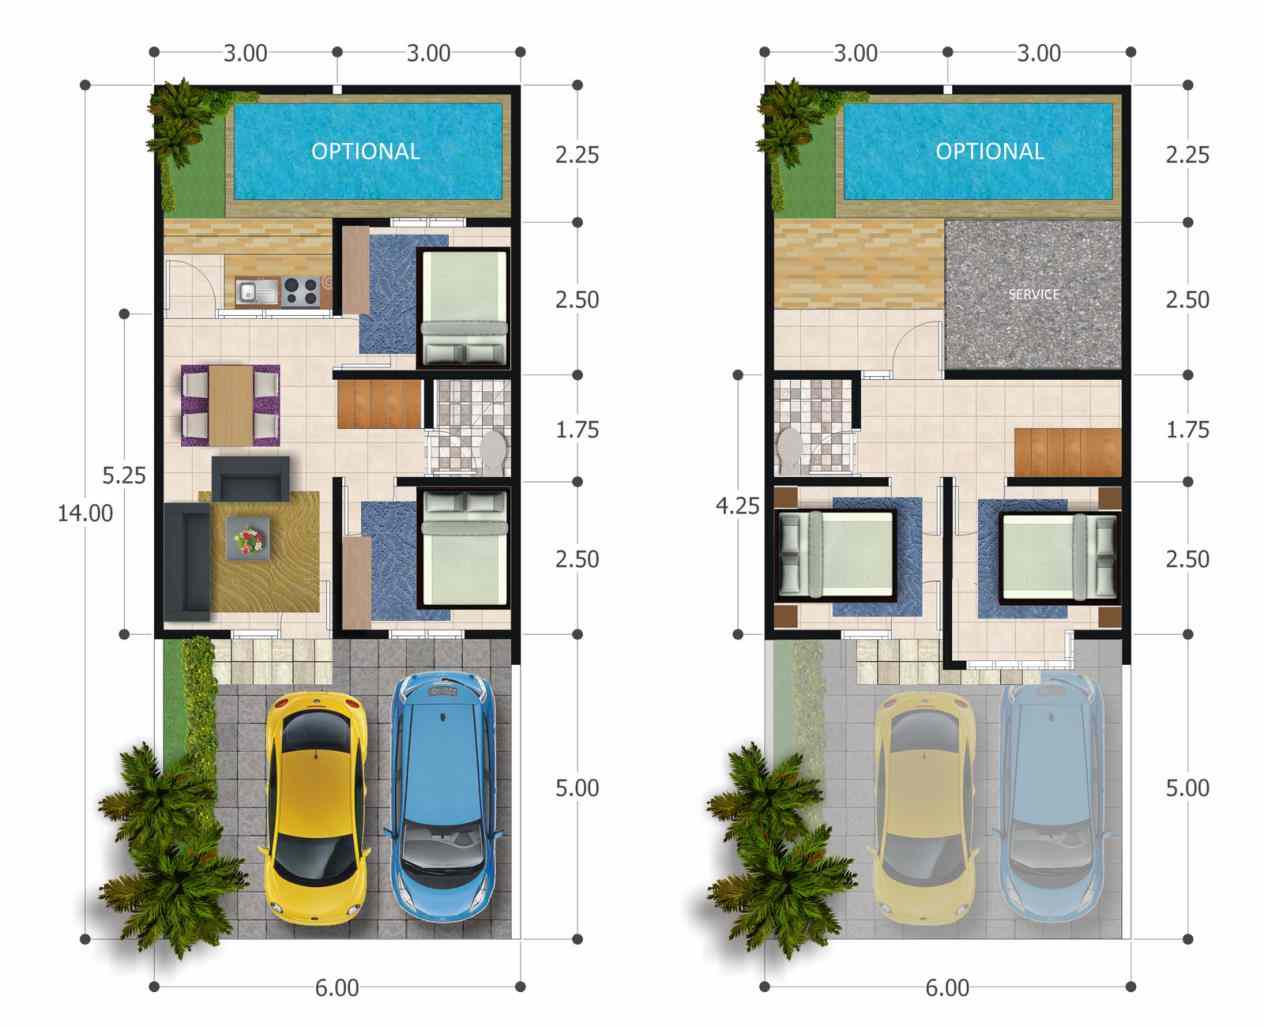 Trend Model Rumah  Minimalis  2019 Sederhana  Tapi Mewah 